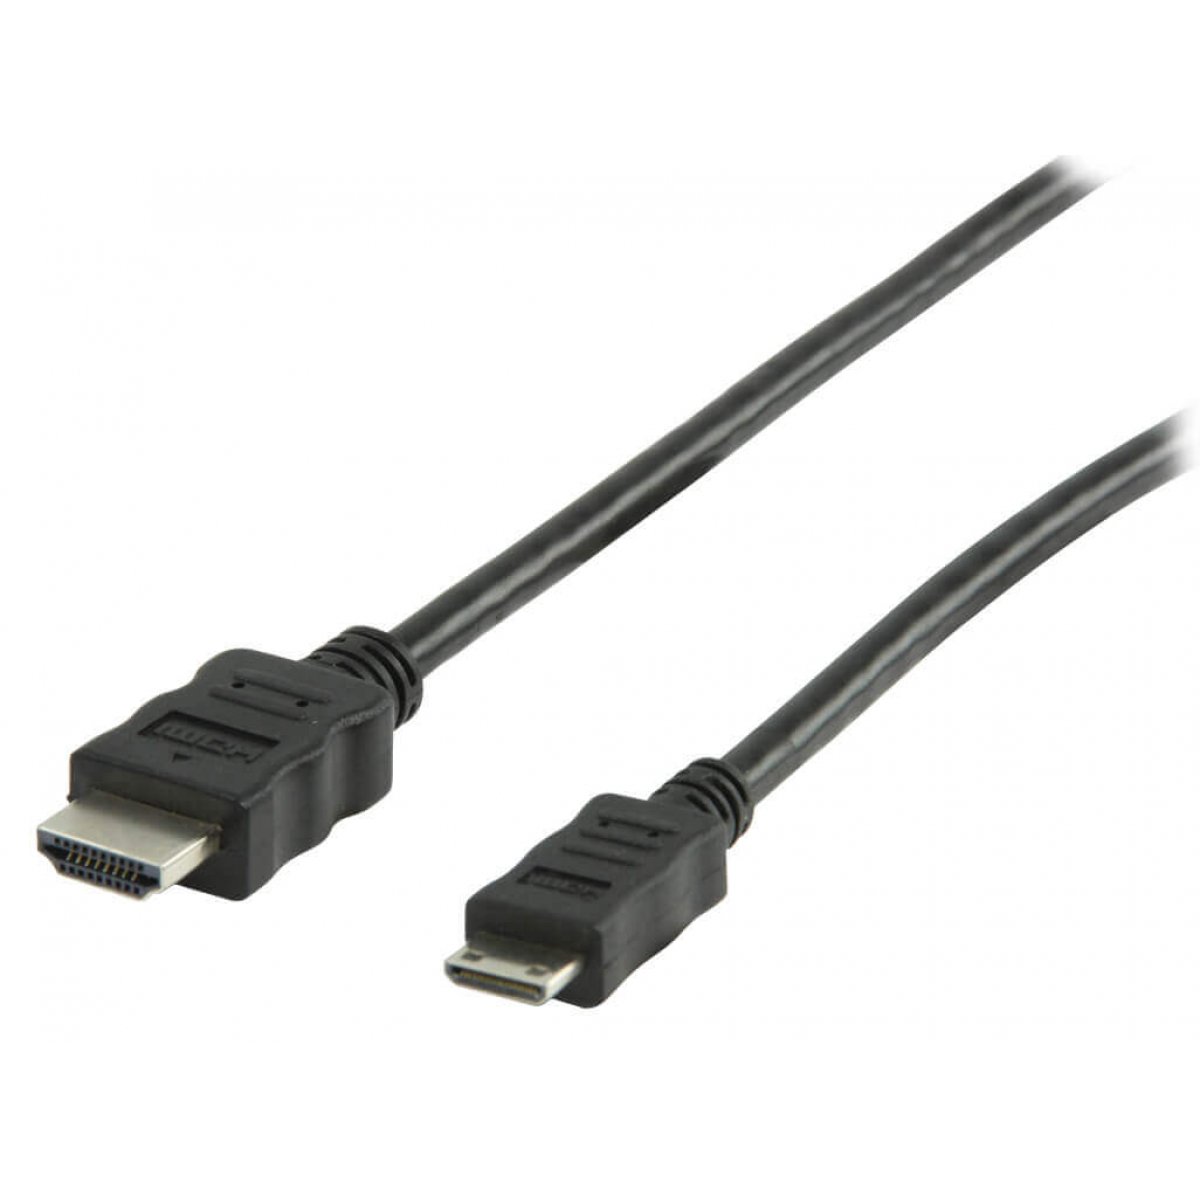 CABLE HDMI/M 1.4 - MINI HDMI/M (2M)